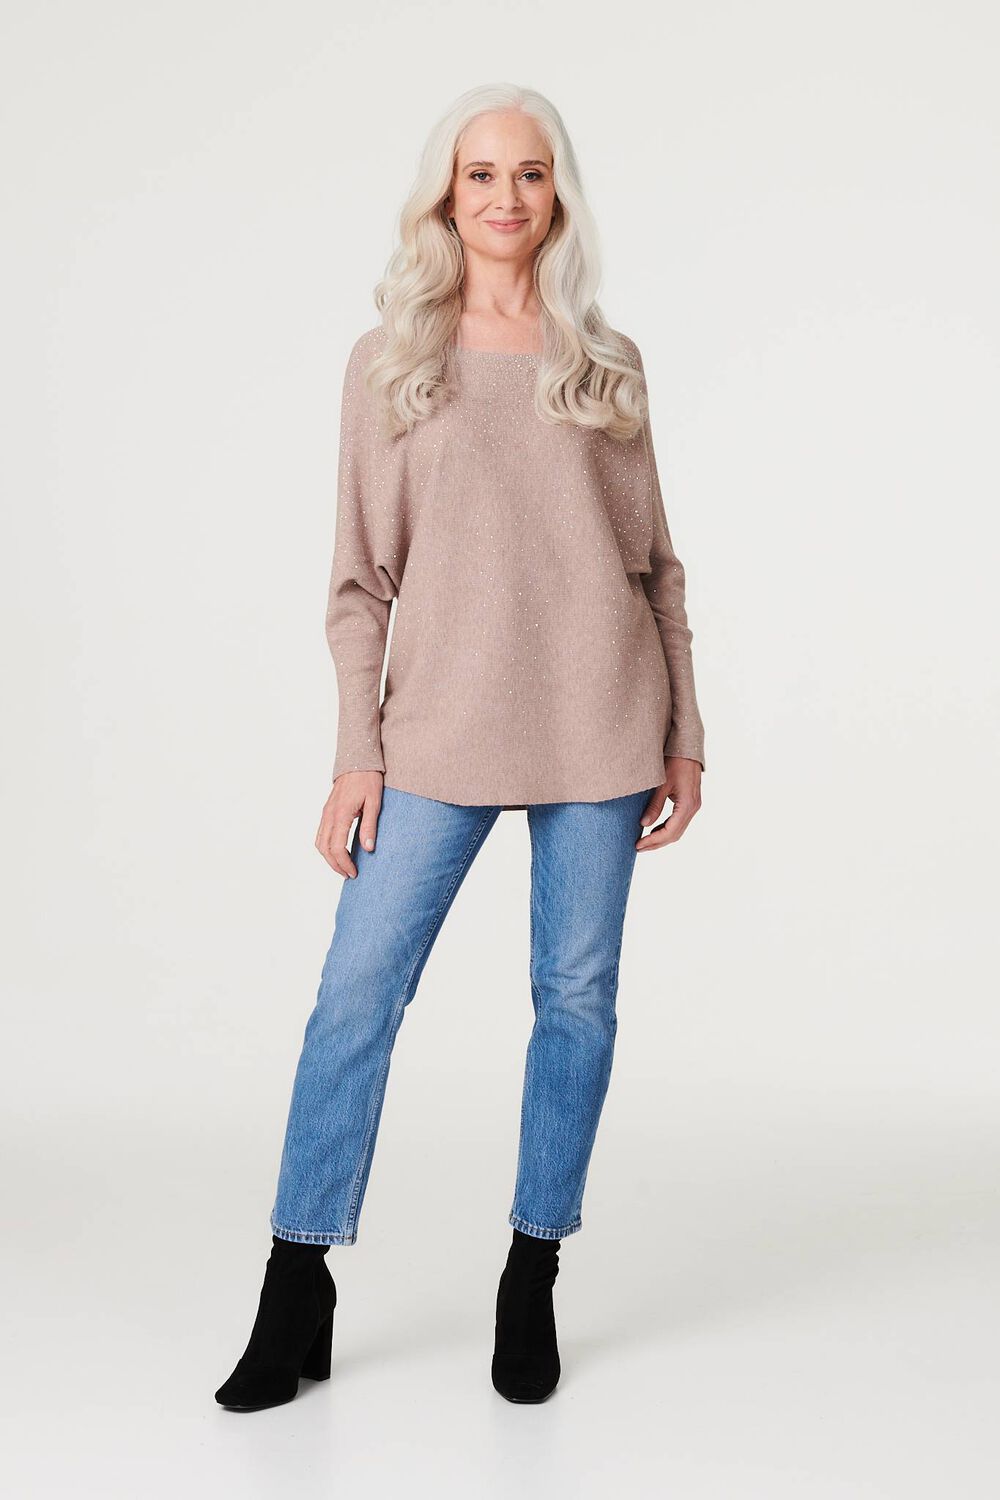 Izabel London Camel - Embellished Long Sleeve Knit Top, Size: L